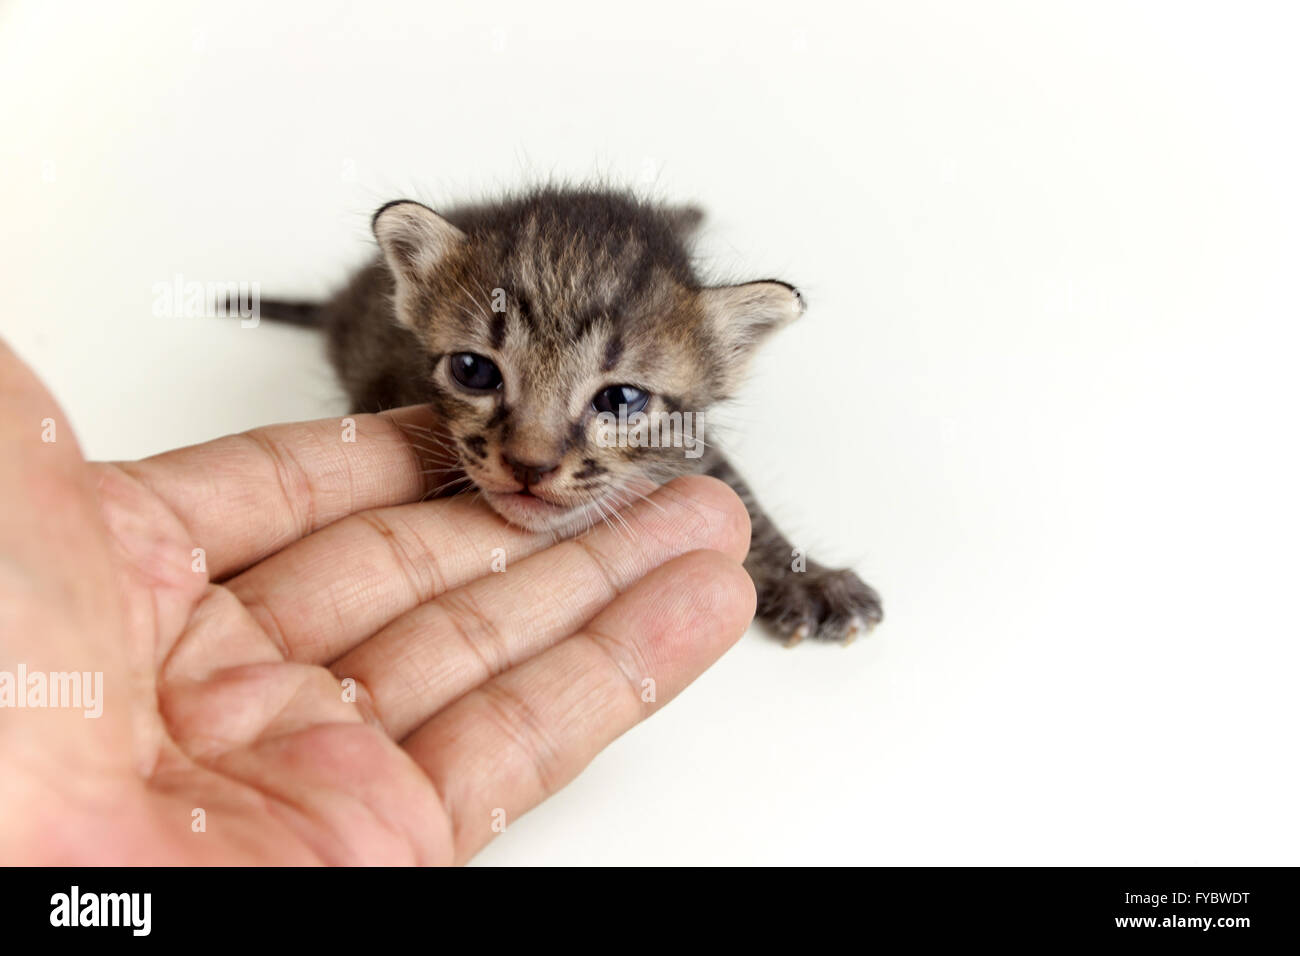 Mano umana tenendo delicatamente la faccia del neonato adorabile brown tabby kitten su sfondo bianco Foto Stock